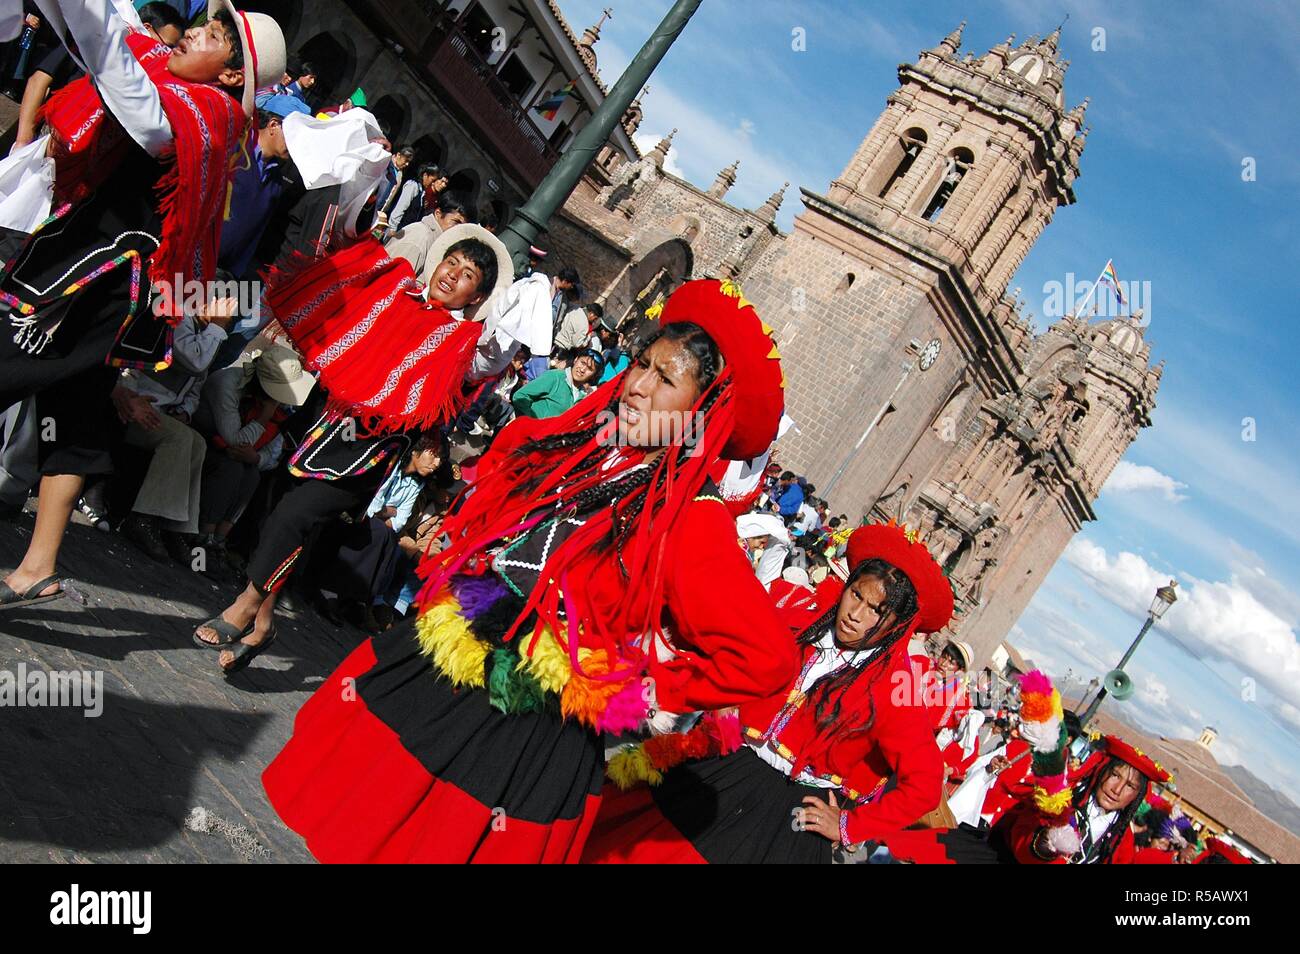 L'Inti Raymi, fête du Soleil est la plus incroyable célébration Inca, cette cérémonie a lieu chaque année le 24 juin à Cuzco a présidé par le j Banque D'Images